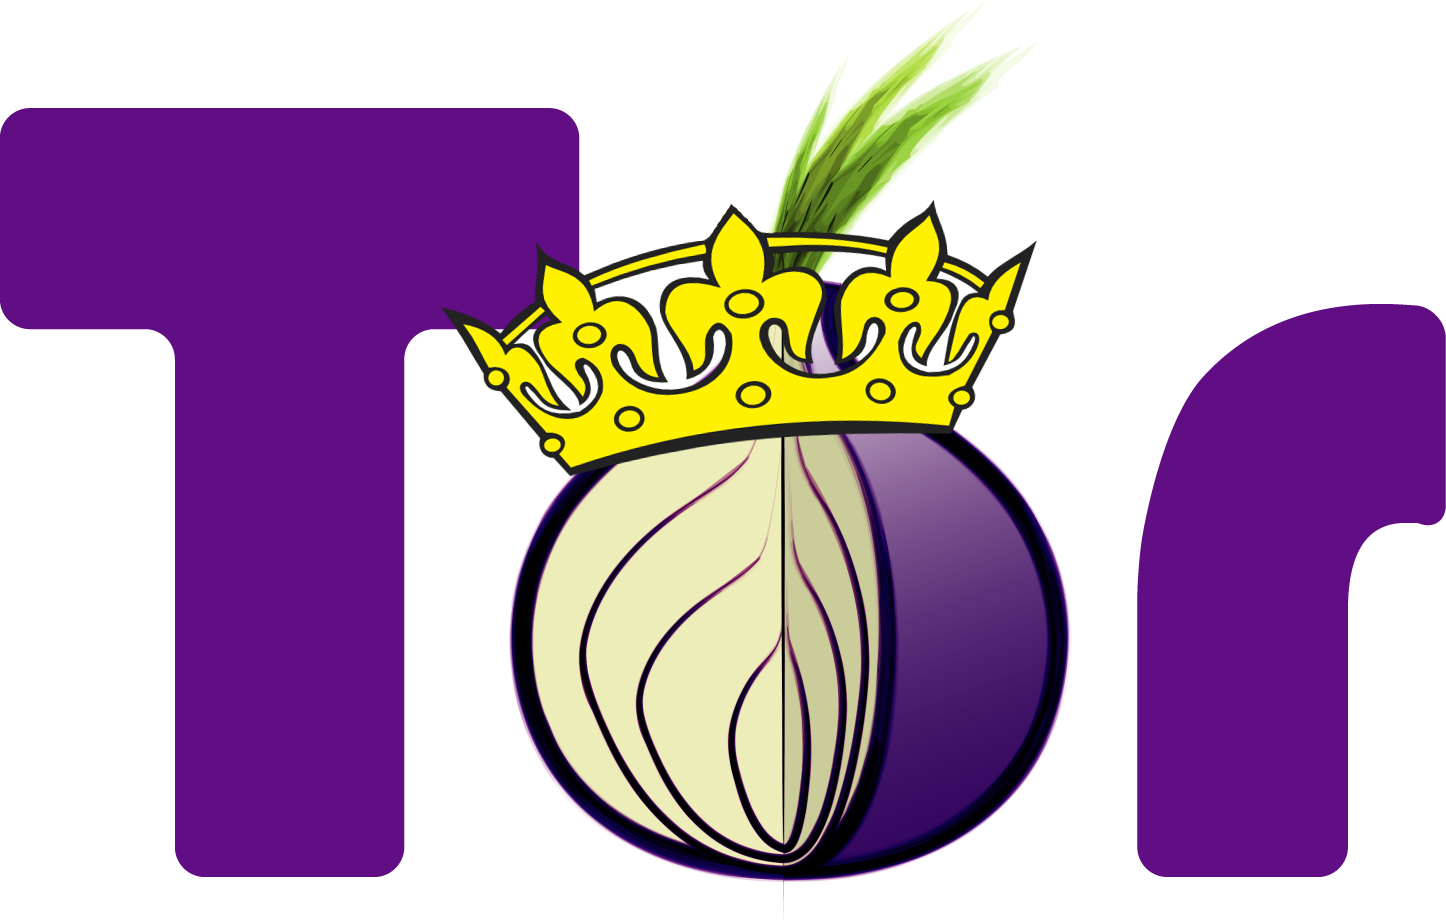 Dark web, gara a chi frega meglio il prossimo con un Tor fake - Wired